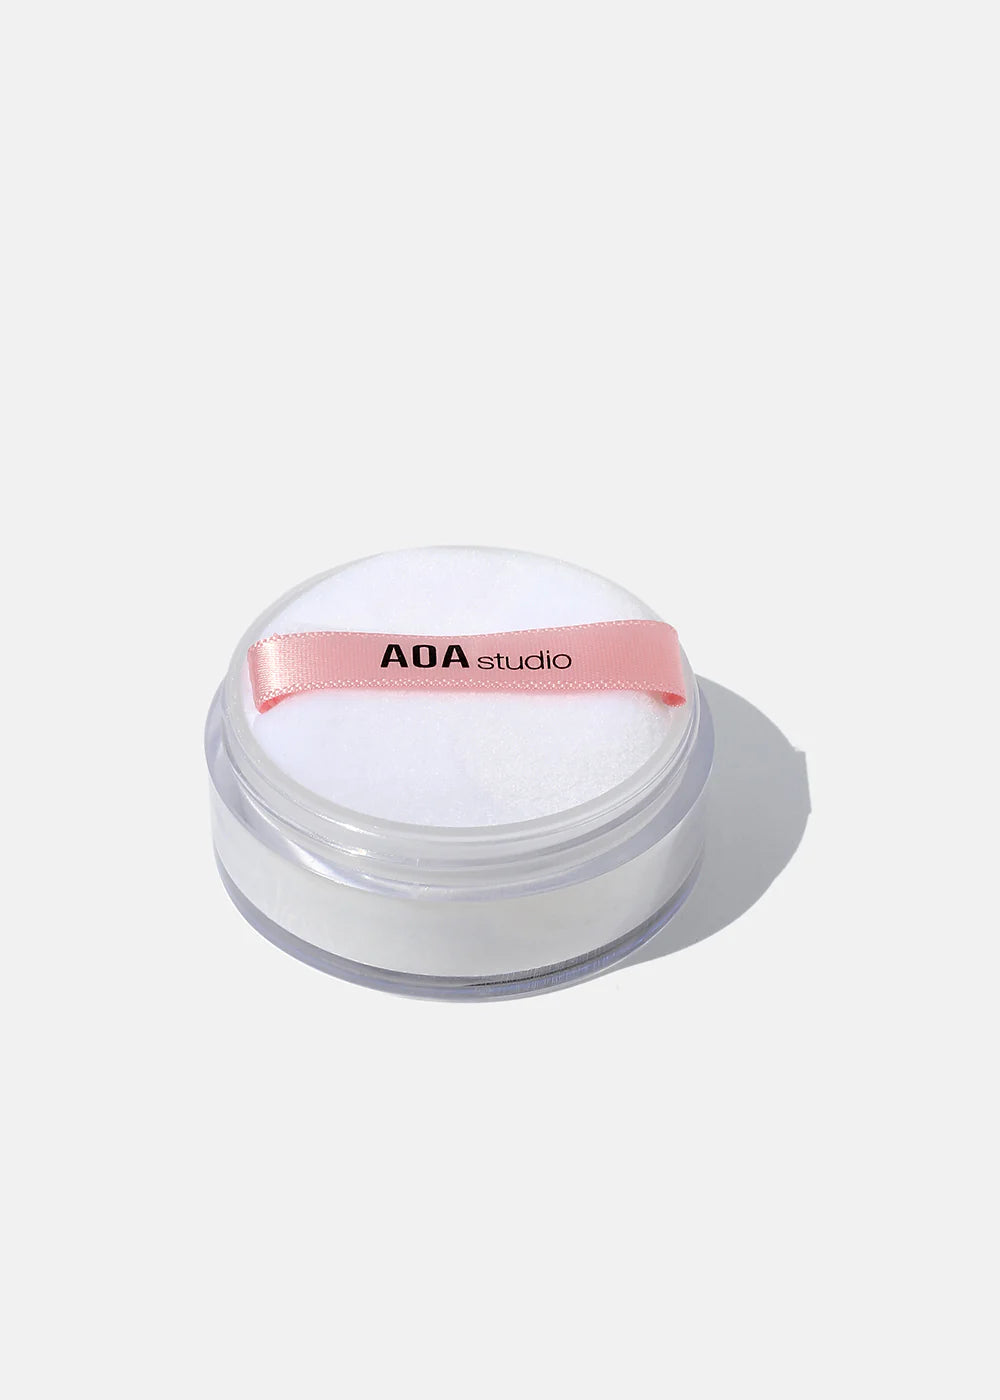 AOA Cotton Powder Puffs | 2 Puffs